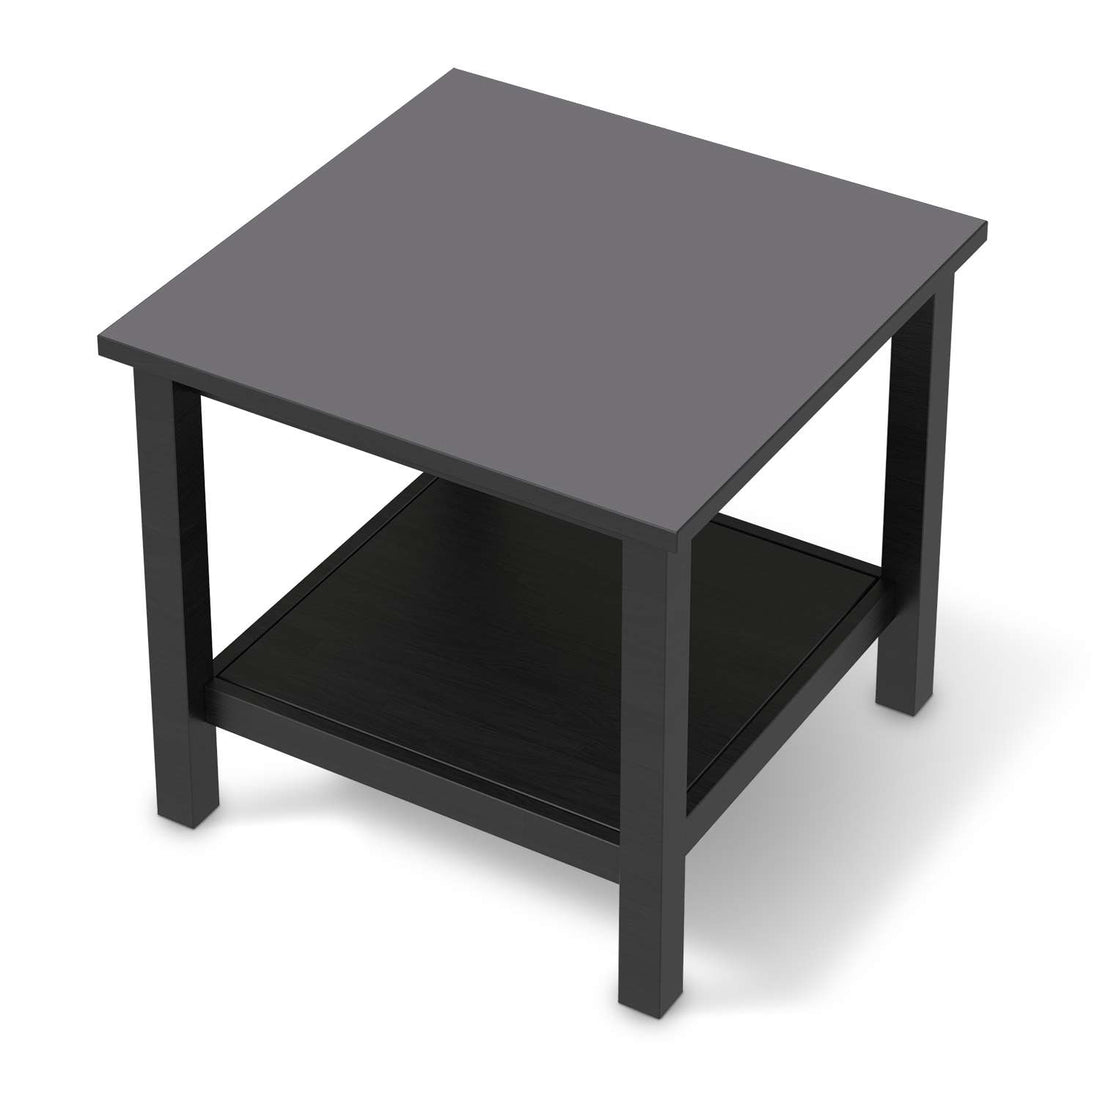 Möbel Klebefolie Grau Light - IKEA Hemnes Beistelltisch 55x55 cm - schwarz